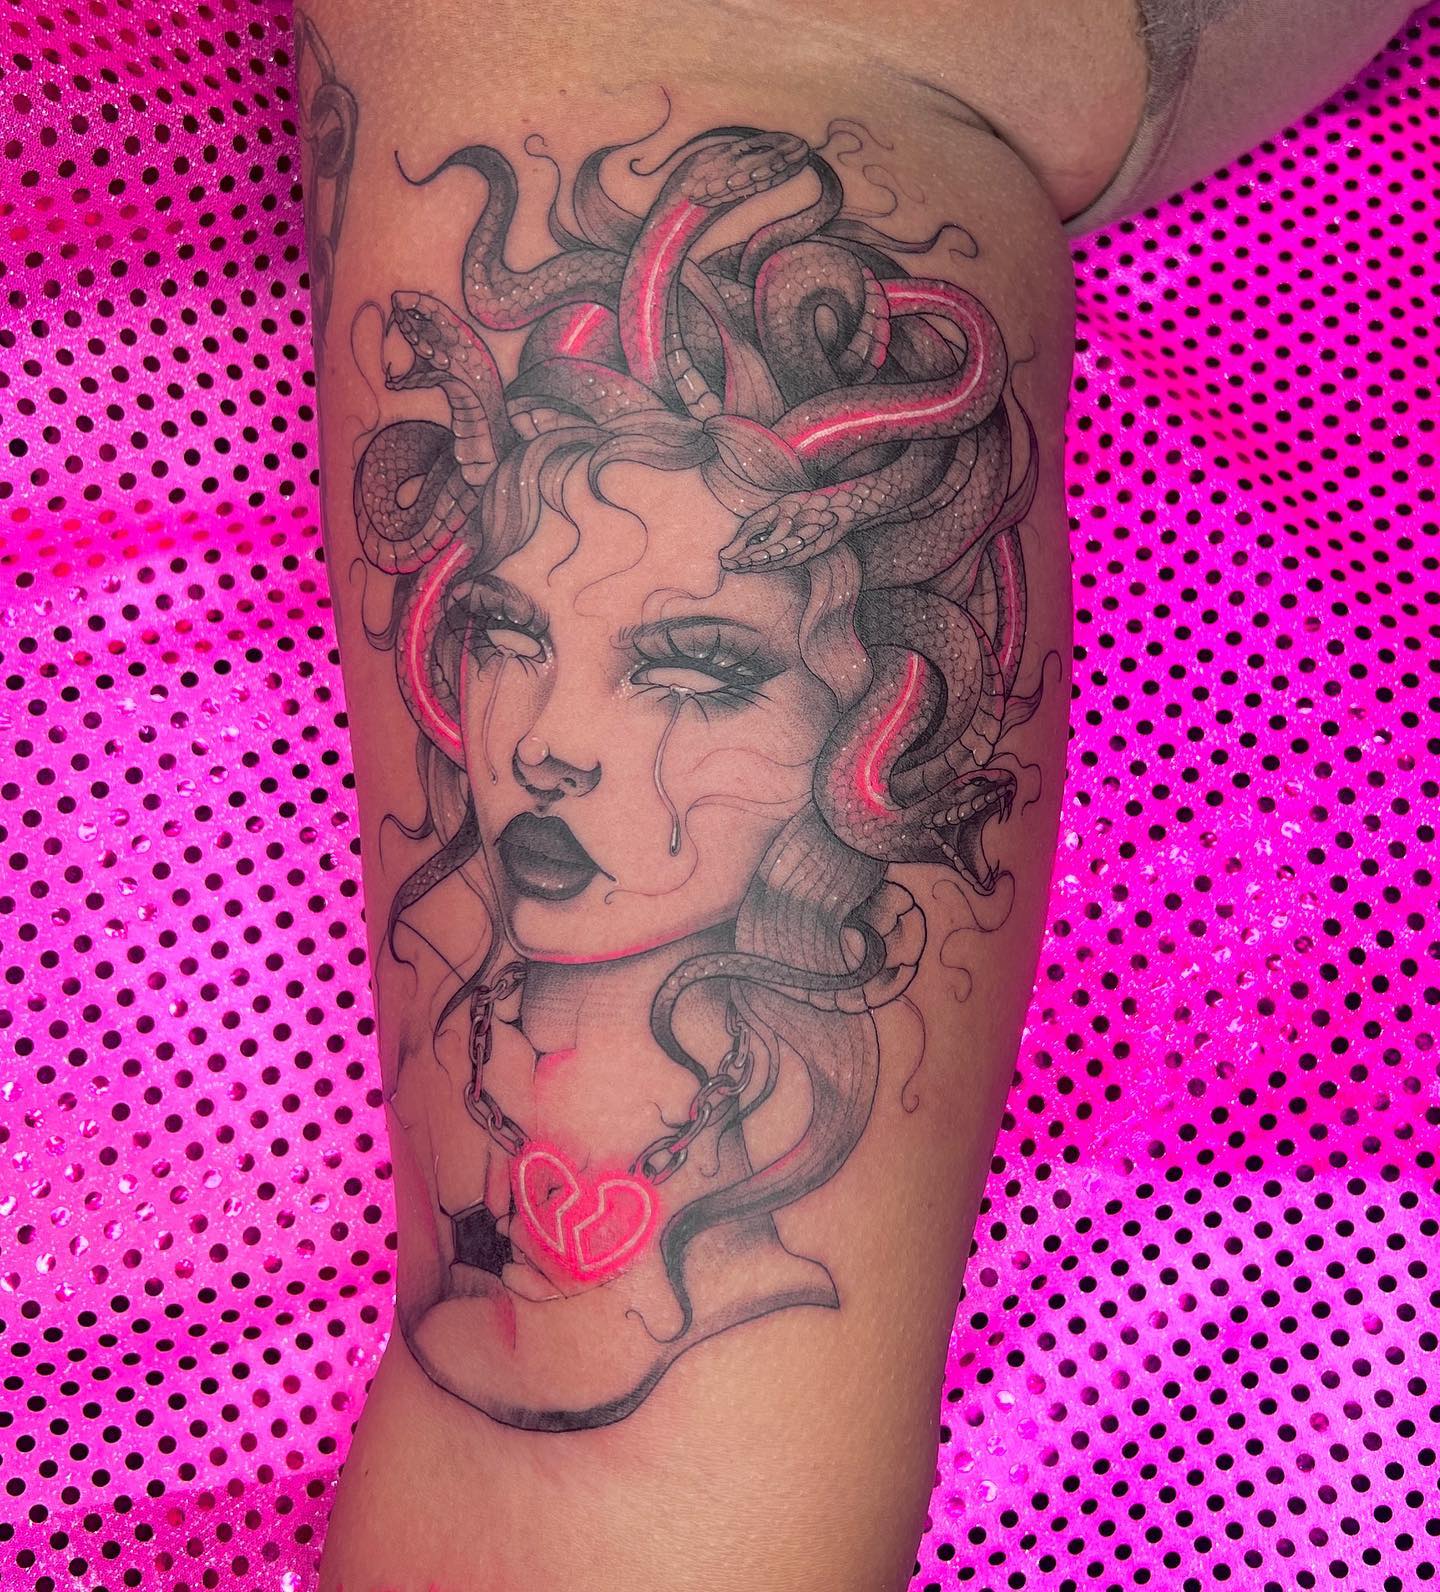 Neon Pink Medusa Tattoo on Arm